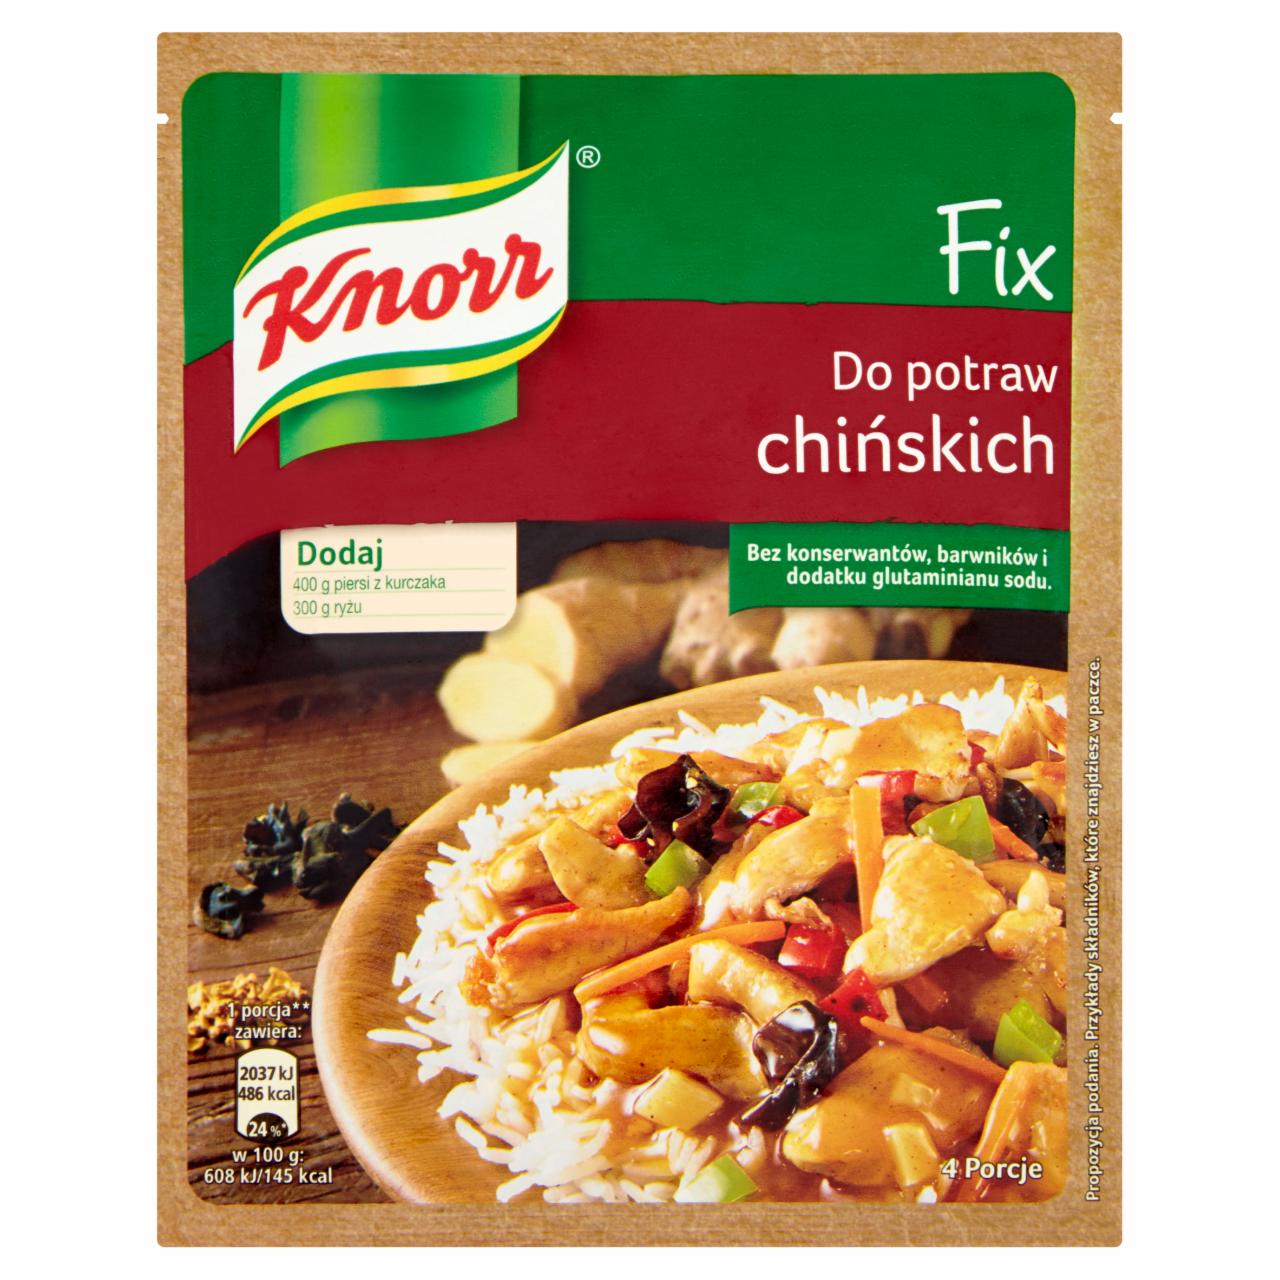 Zdjęcia - Knorr Fix do potraw chińskich 39 g